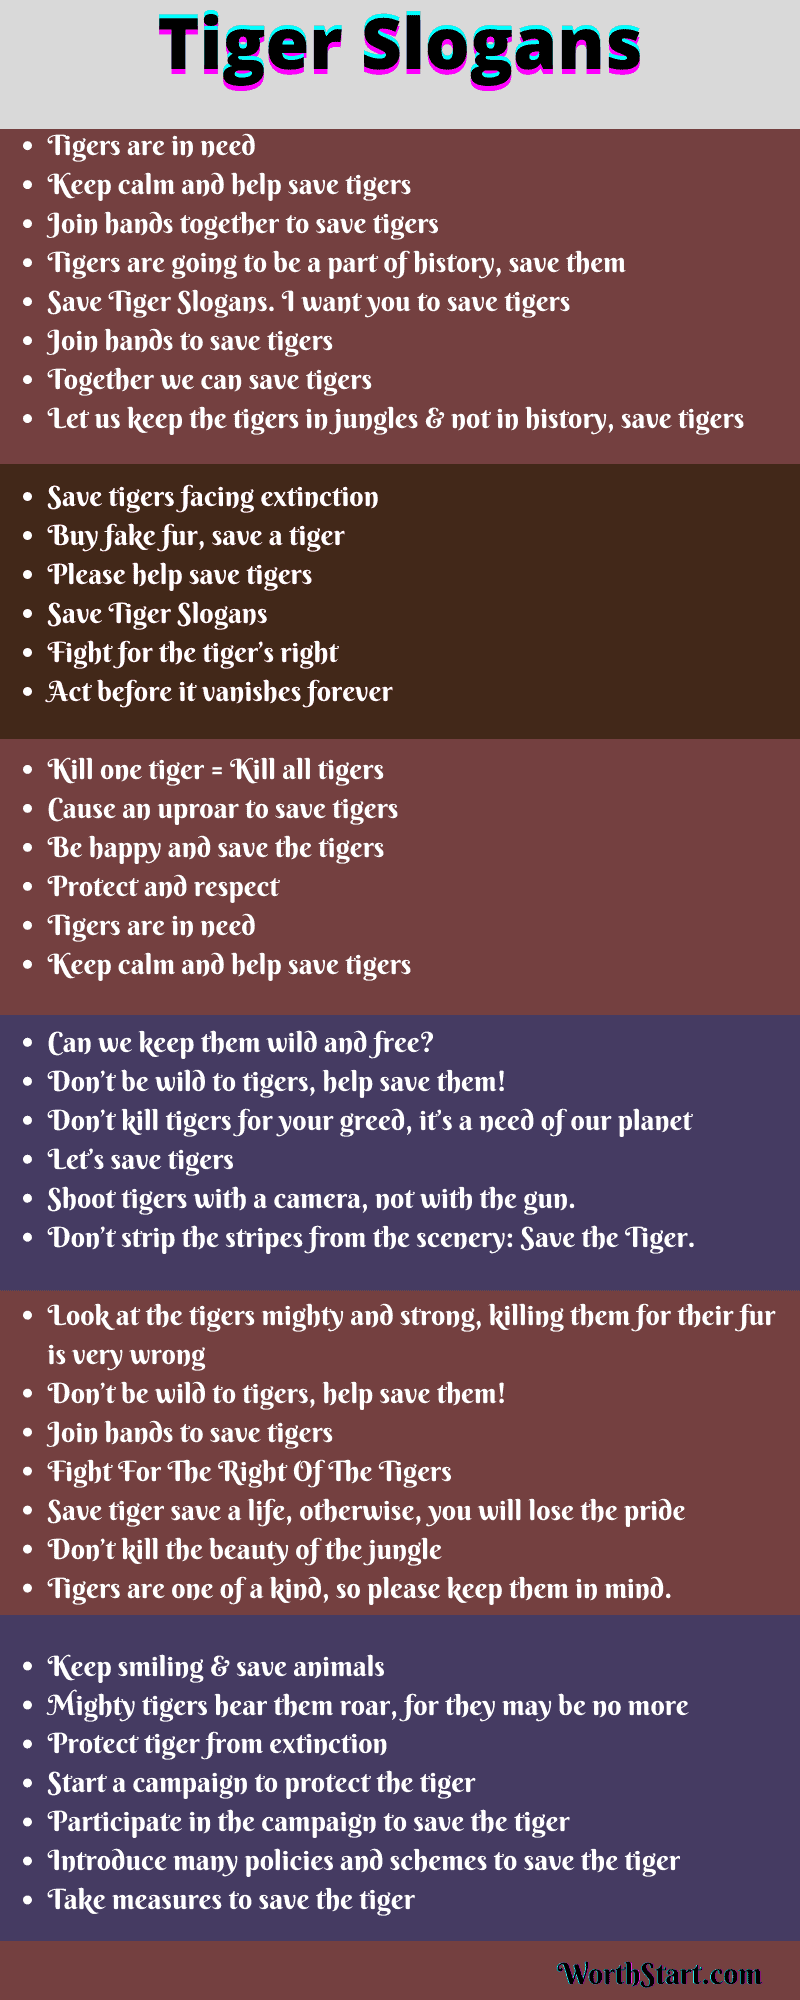 Tiger Slogans